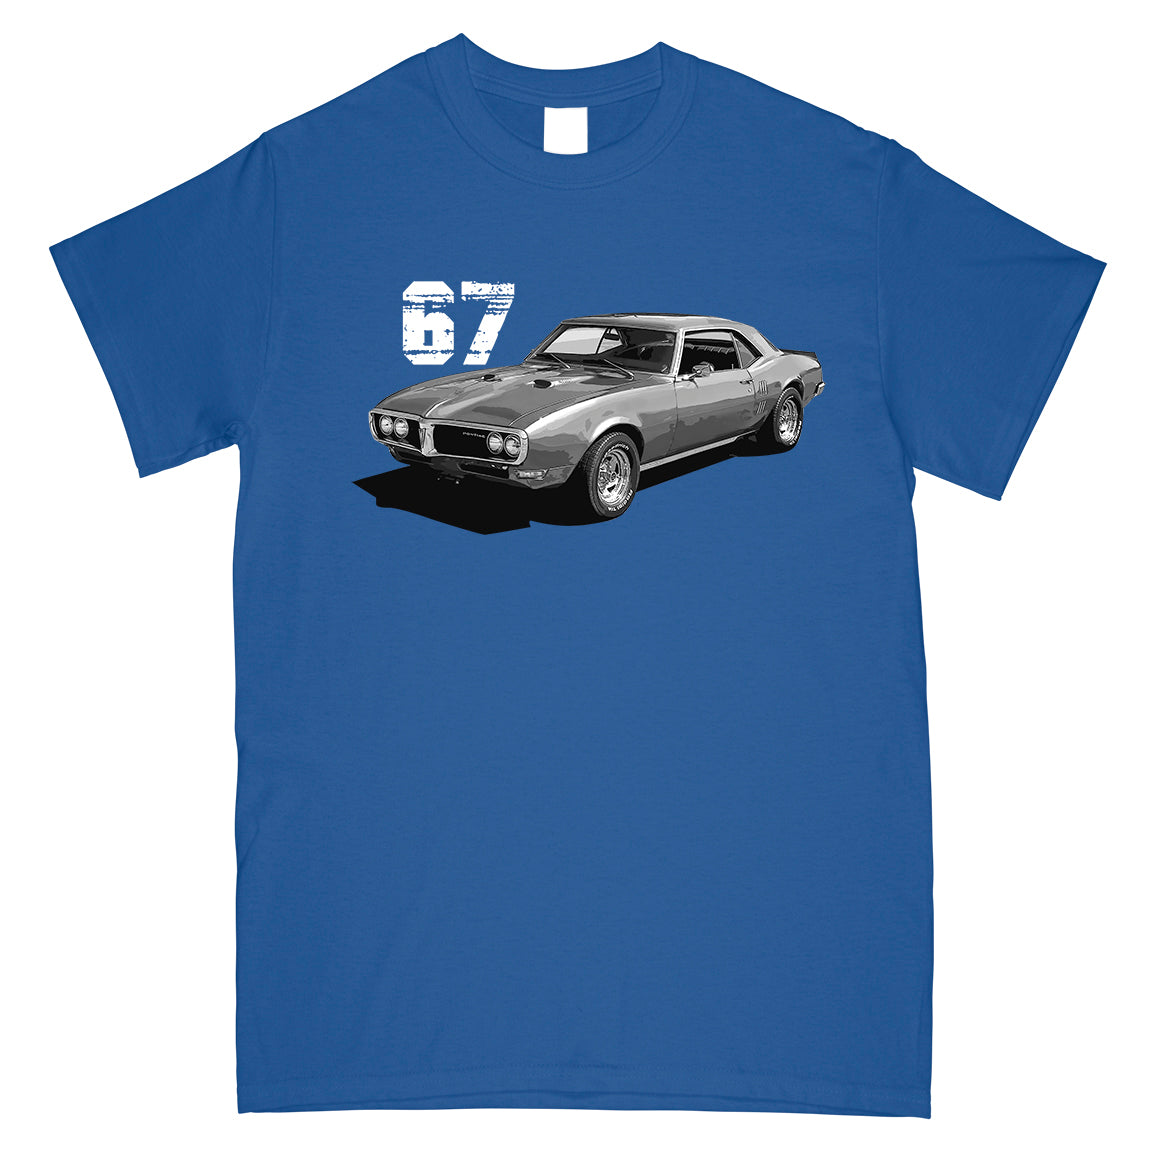 67 Firebird T-Shirt in blue